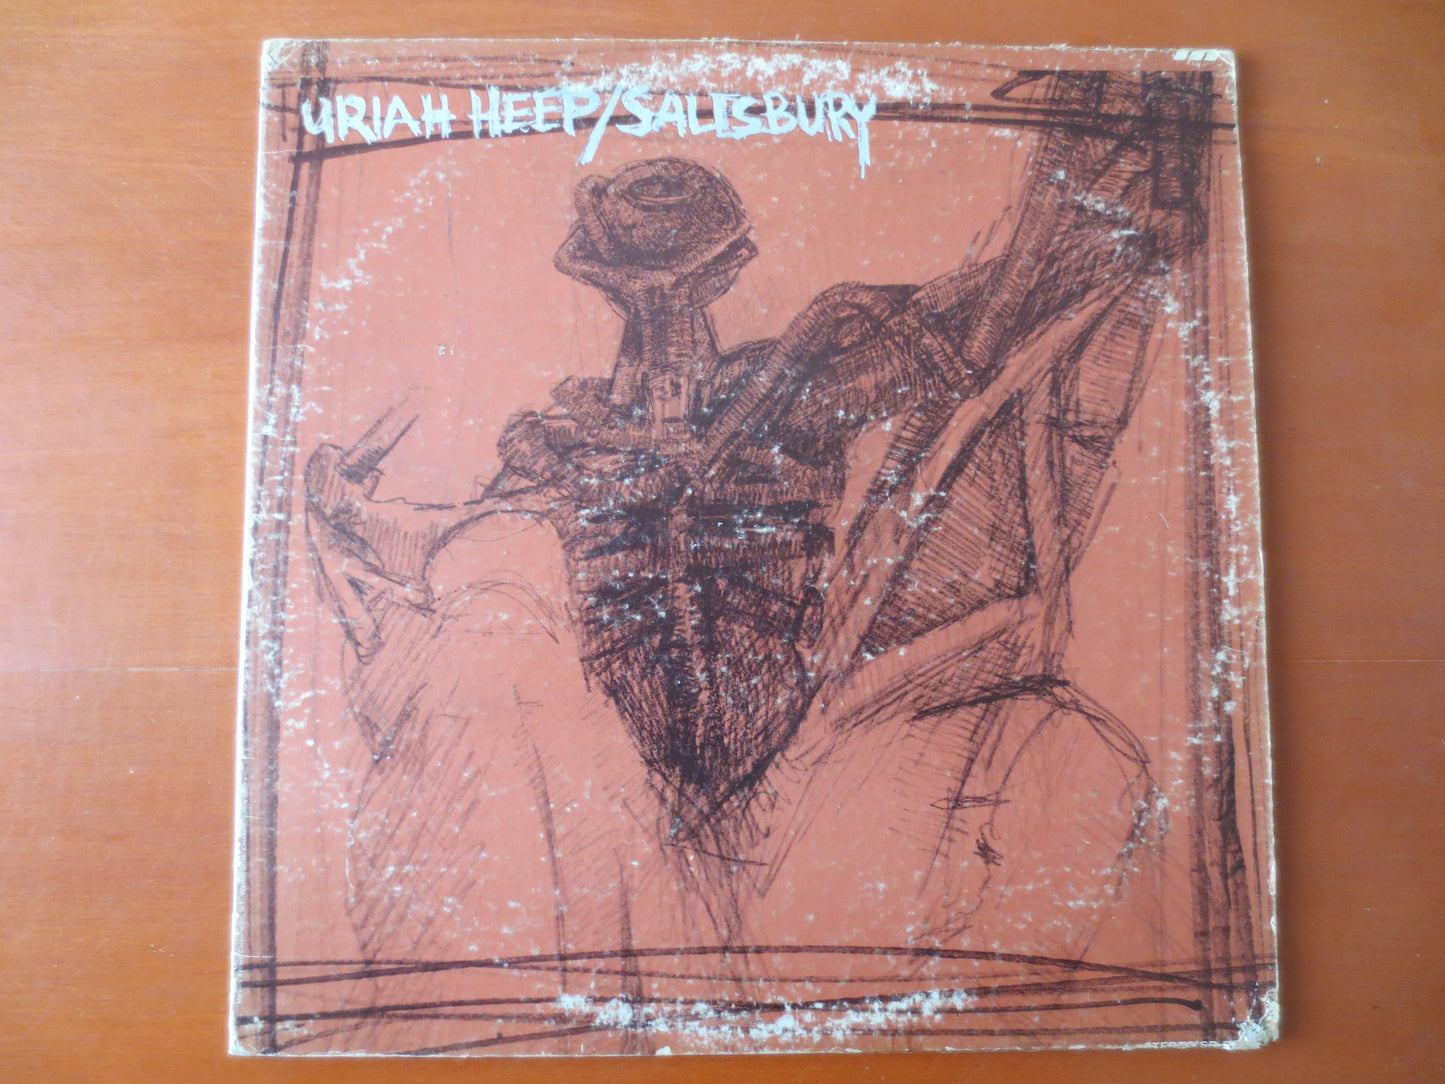 URIAH HEEP, SALISBURY, Uriah Heep Record, Uriah Heep Albums, Uriah Heep lps, Hard Rock Albums, Classic Rock lp, 1971 Record